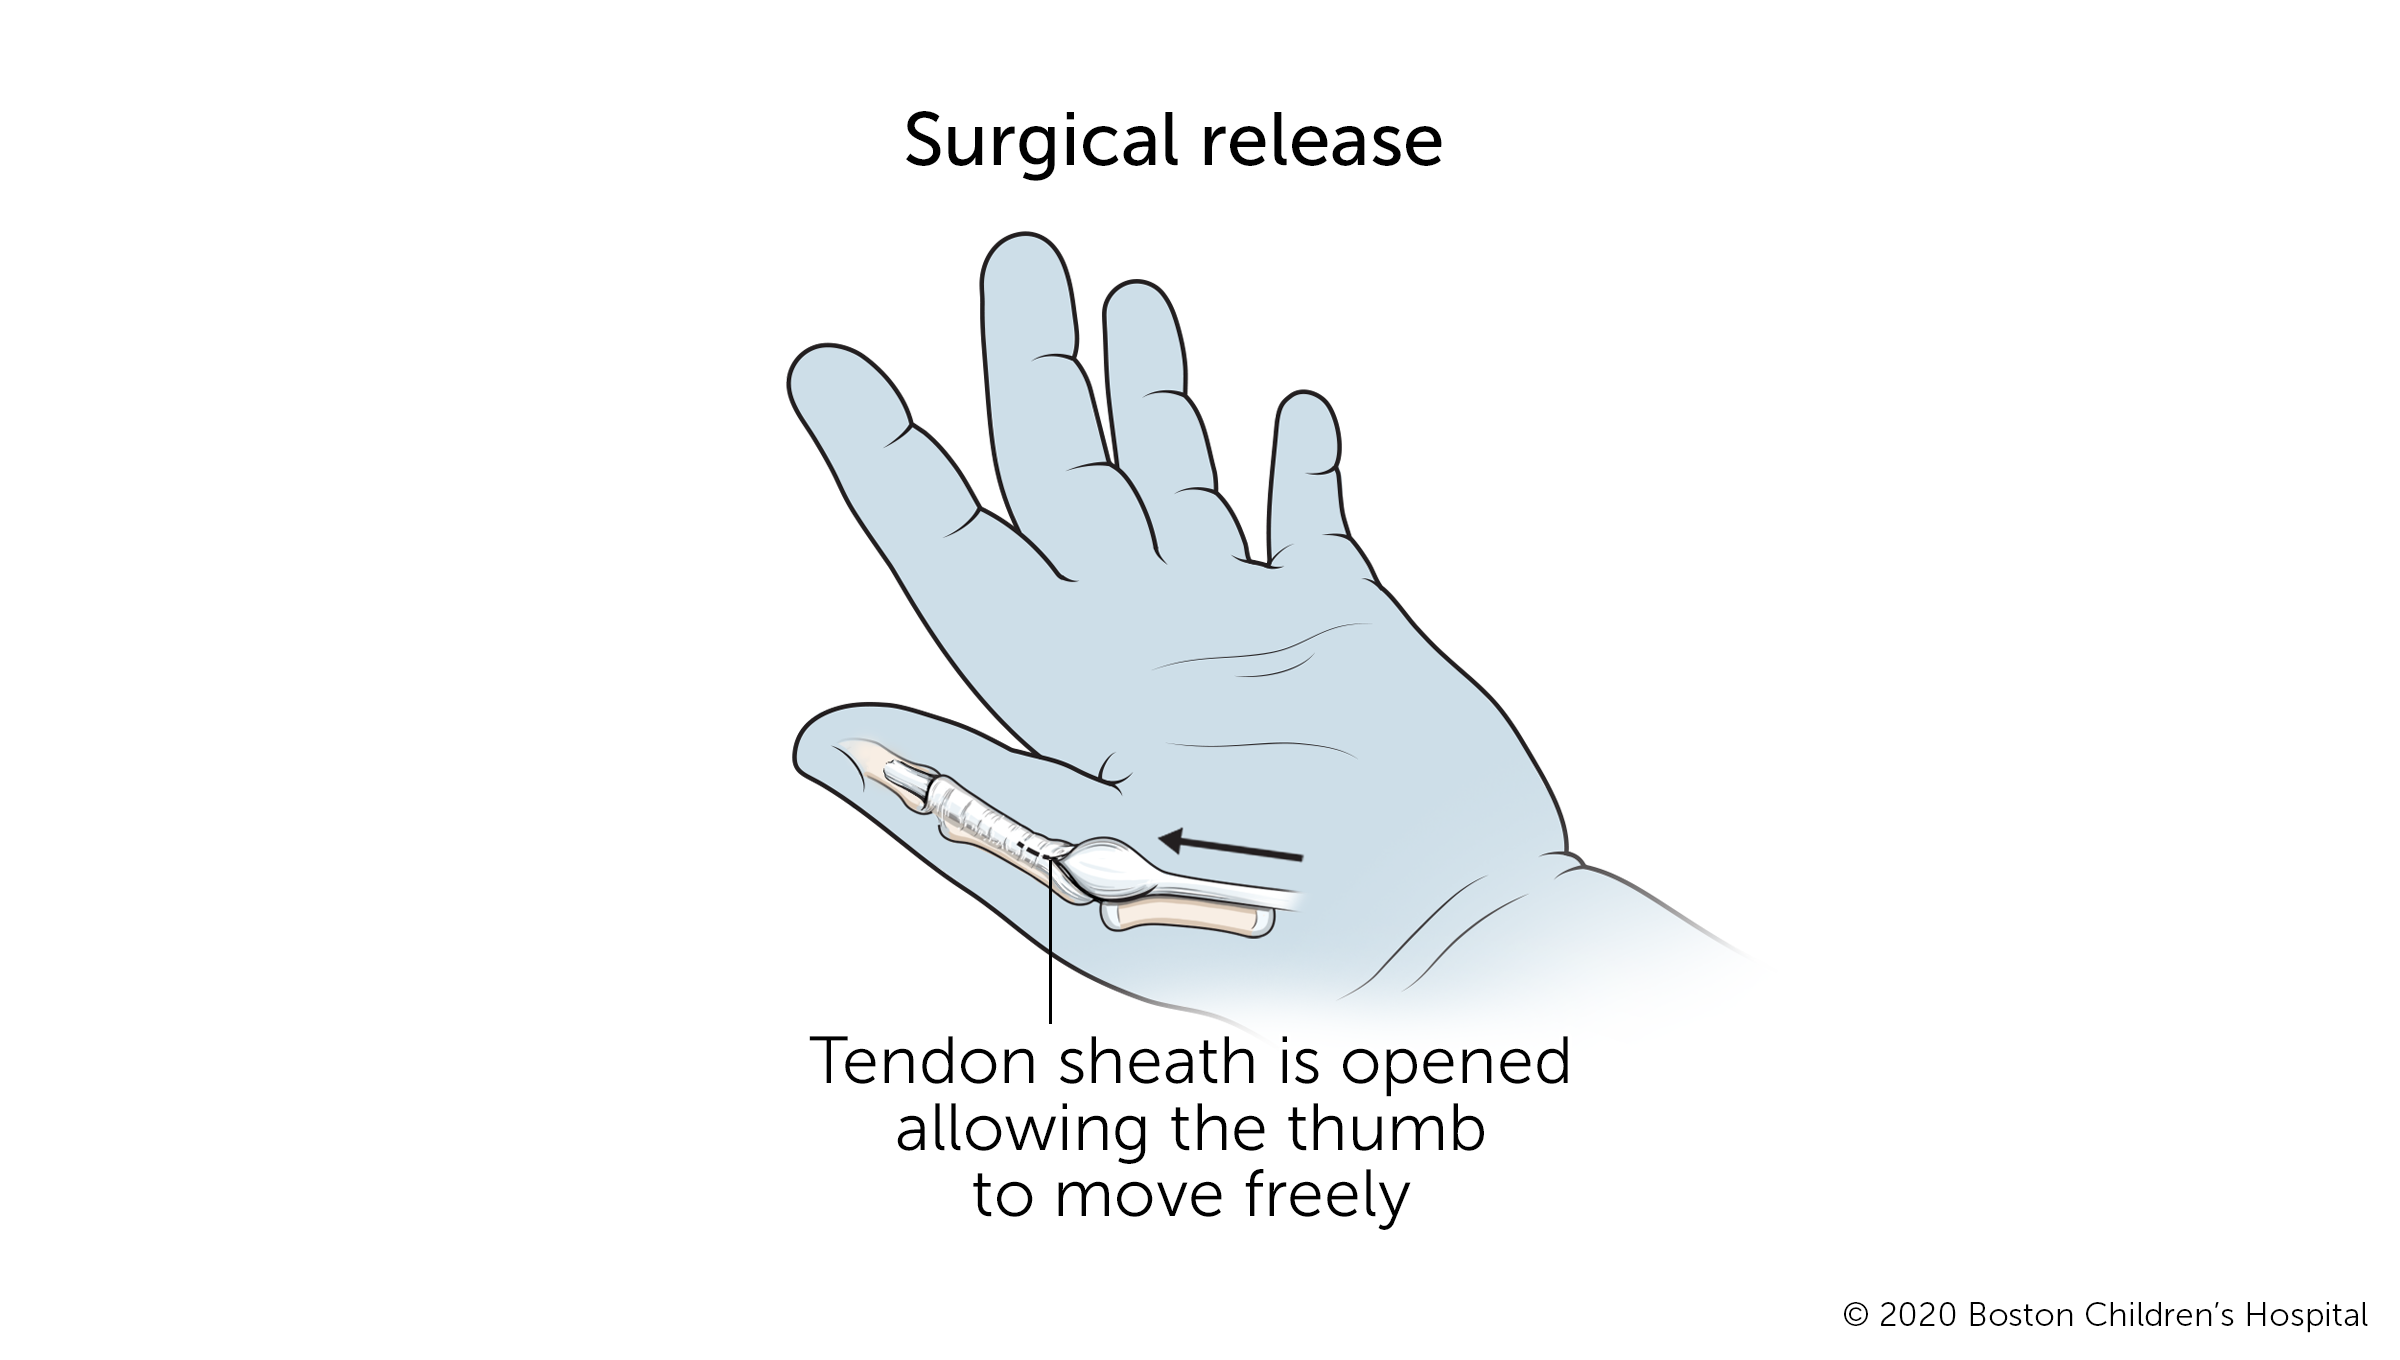 触发拇指:在手术过程中，肌腱周围的鞘被打开，以允许拇指自由活动。